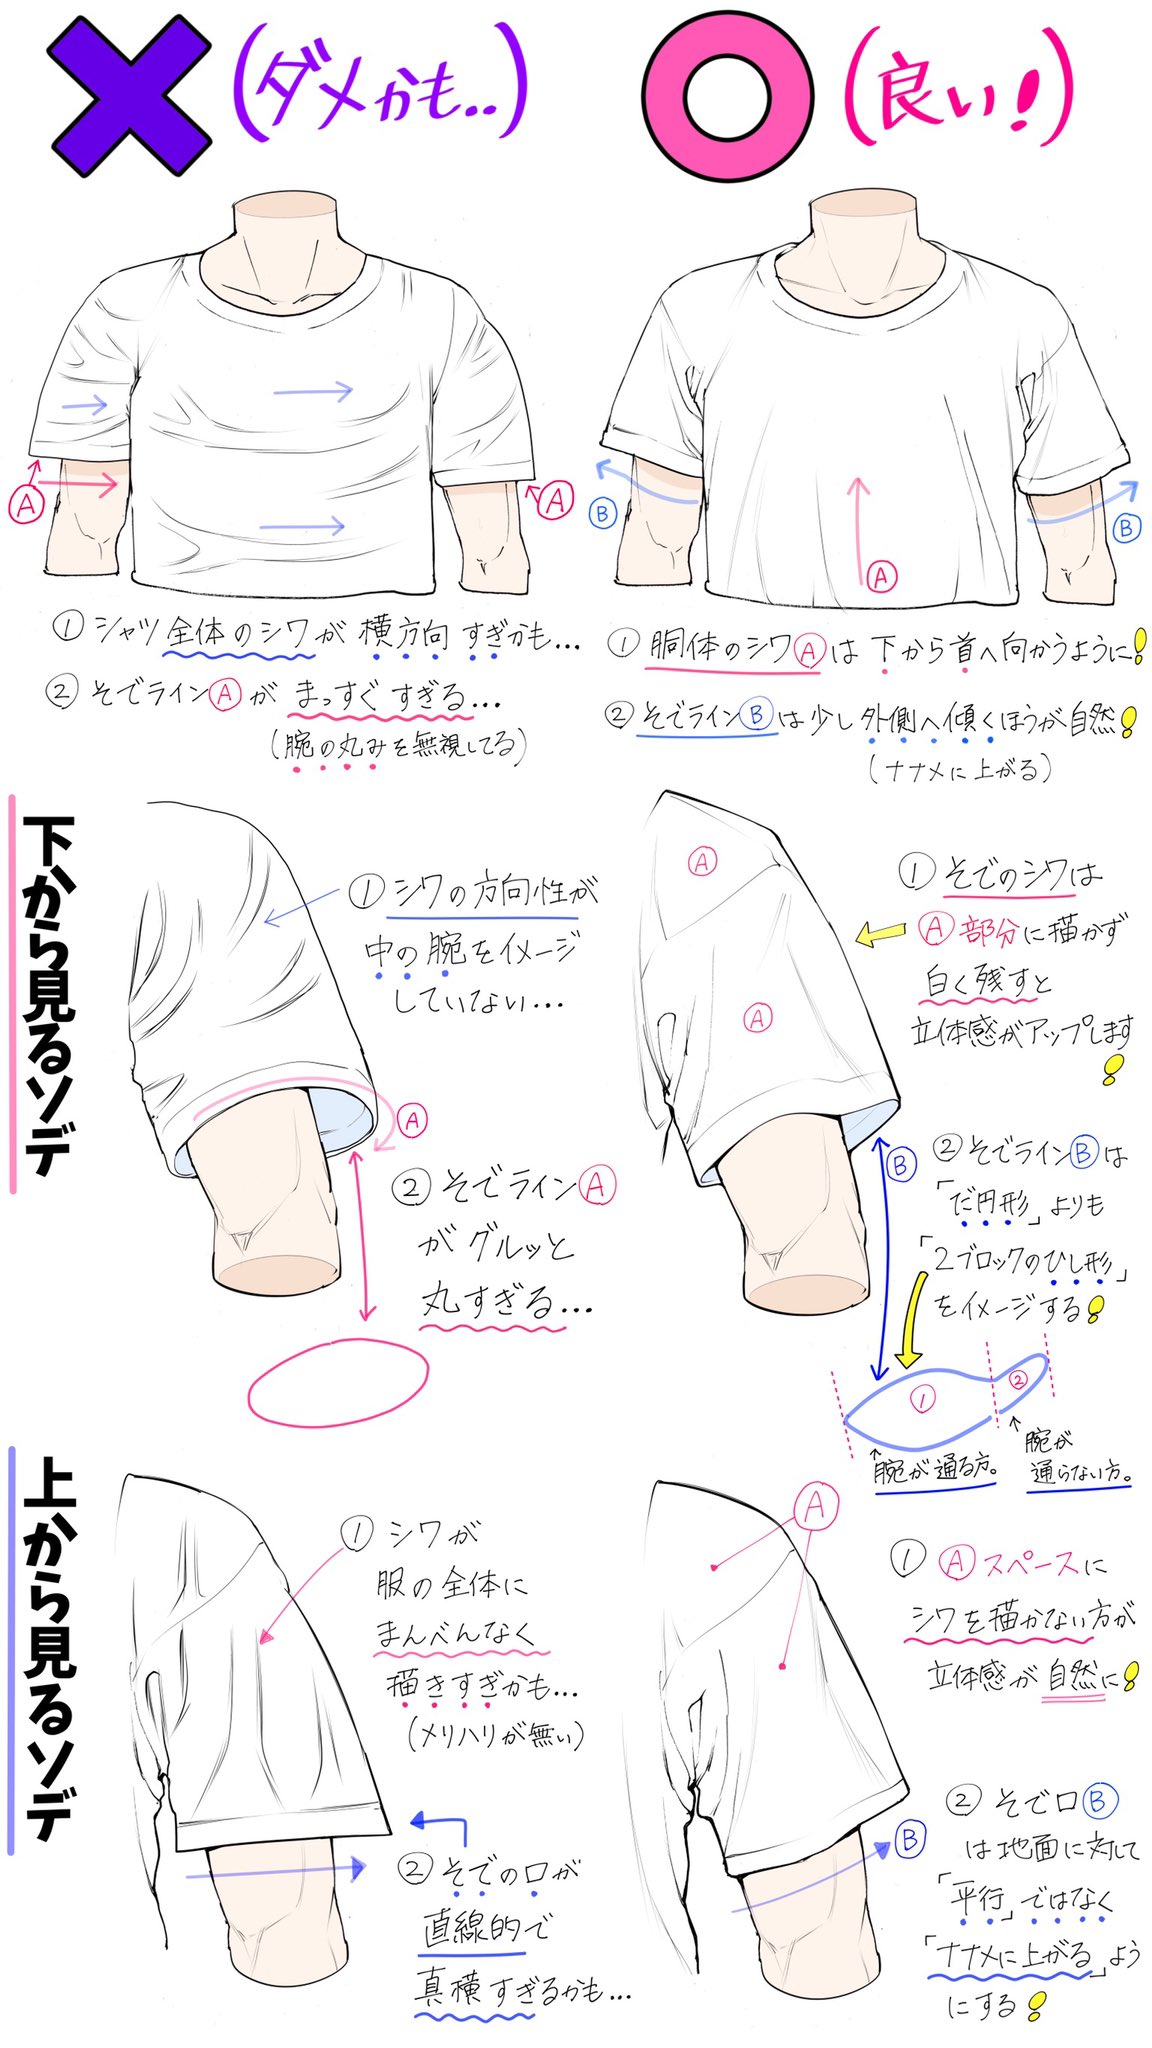 吉村拓也 イラスト講座 Tシャツのシワ感が苦手で描けない シャツの構図アングルが難しい って人ほど上達しやすい Tシャツ服男子の描き方 講座 T Co Poj1lw50qf Twitter